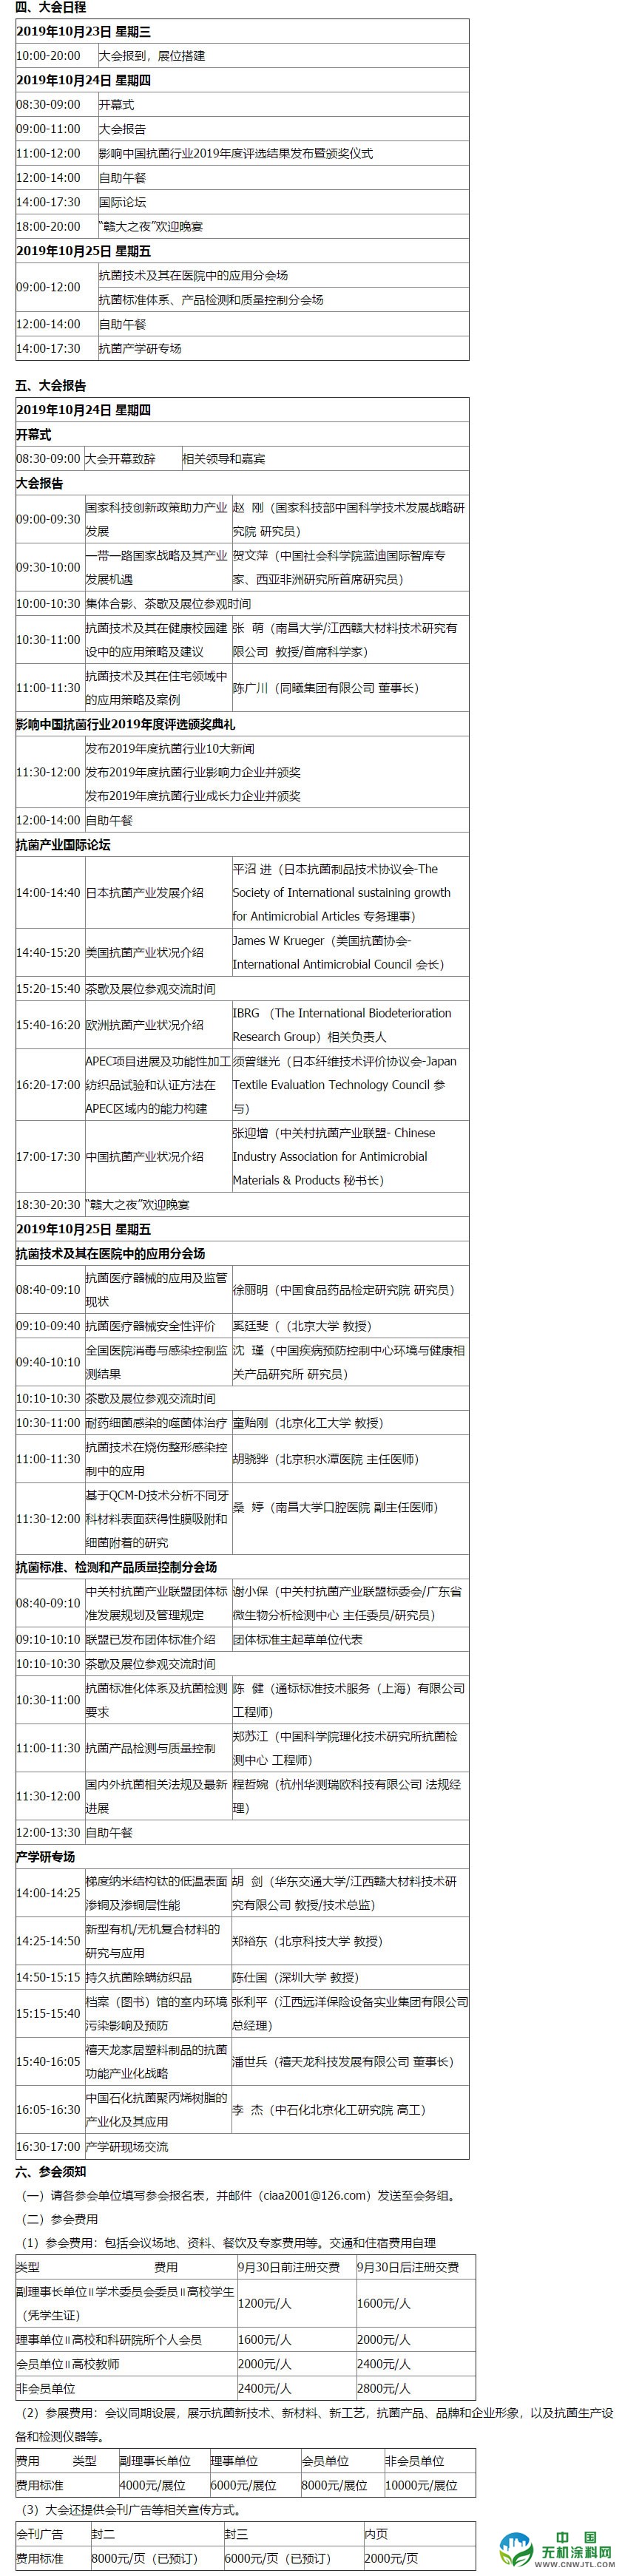 2019(第 12 届)中国抗菌产业发展大会第三轮会议通知 中国无机涂料网,coatingol.com